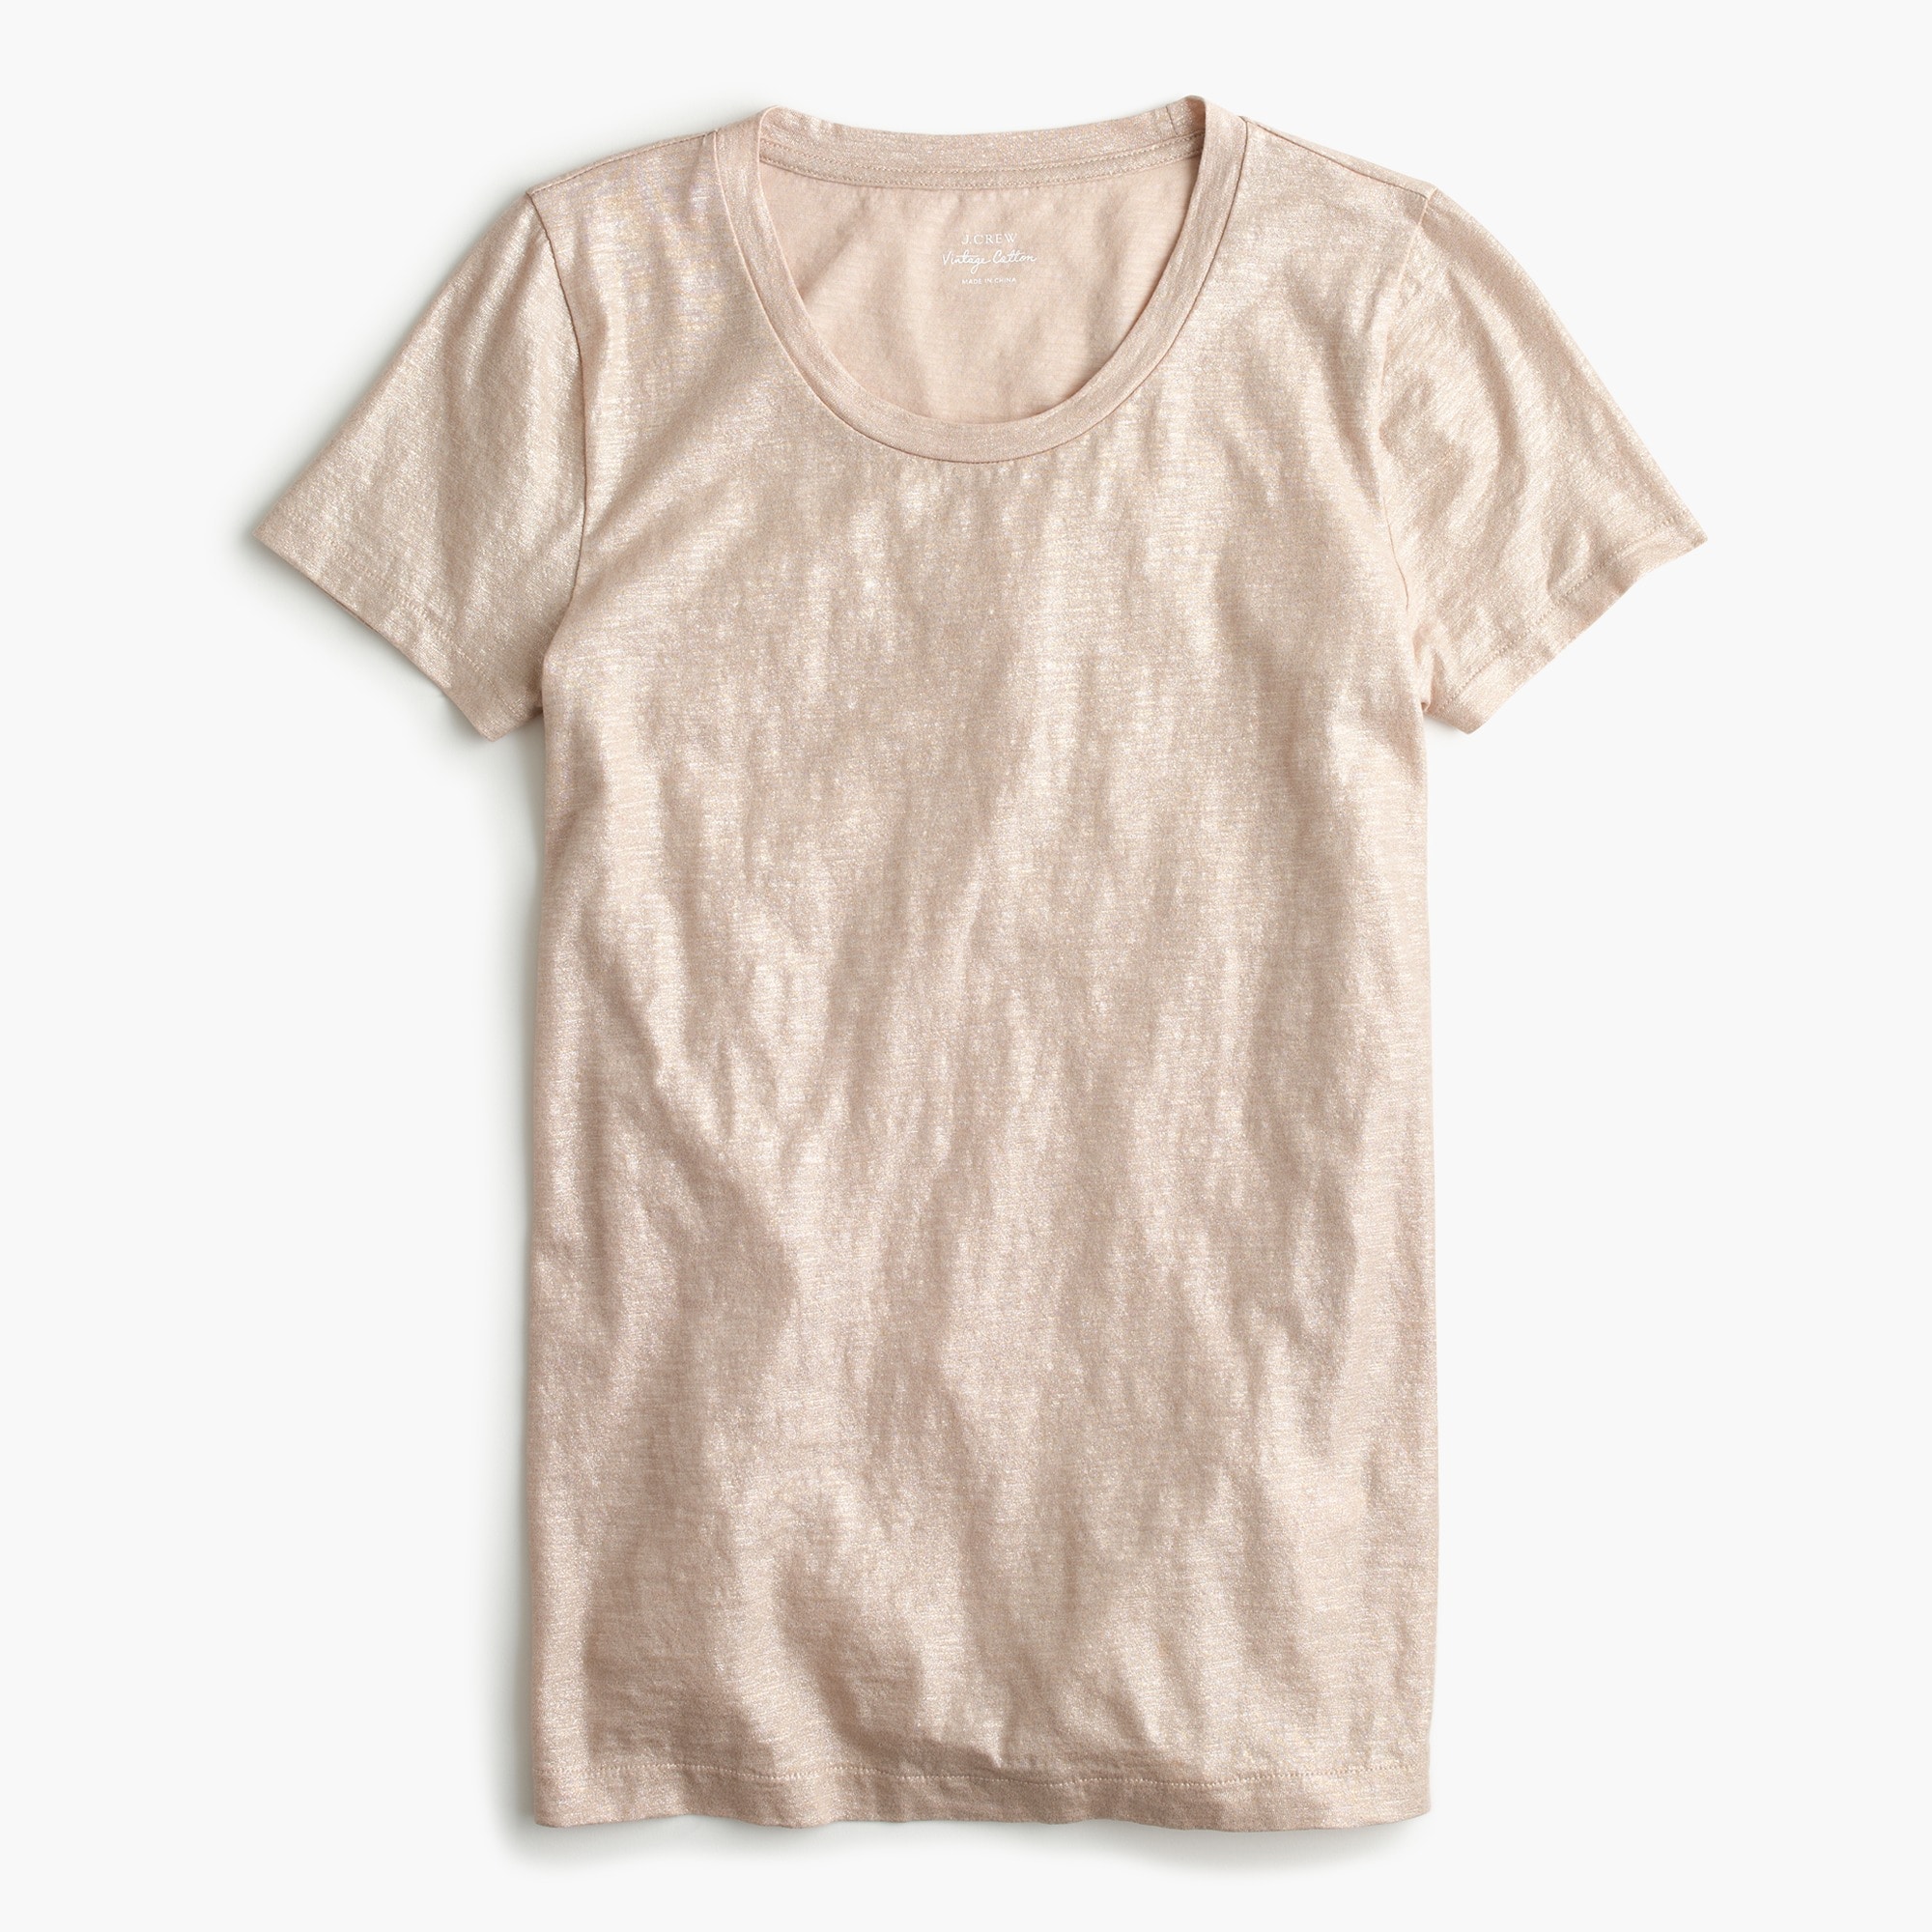 J.Crew: Vintage Cotton T-shirt For Women